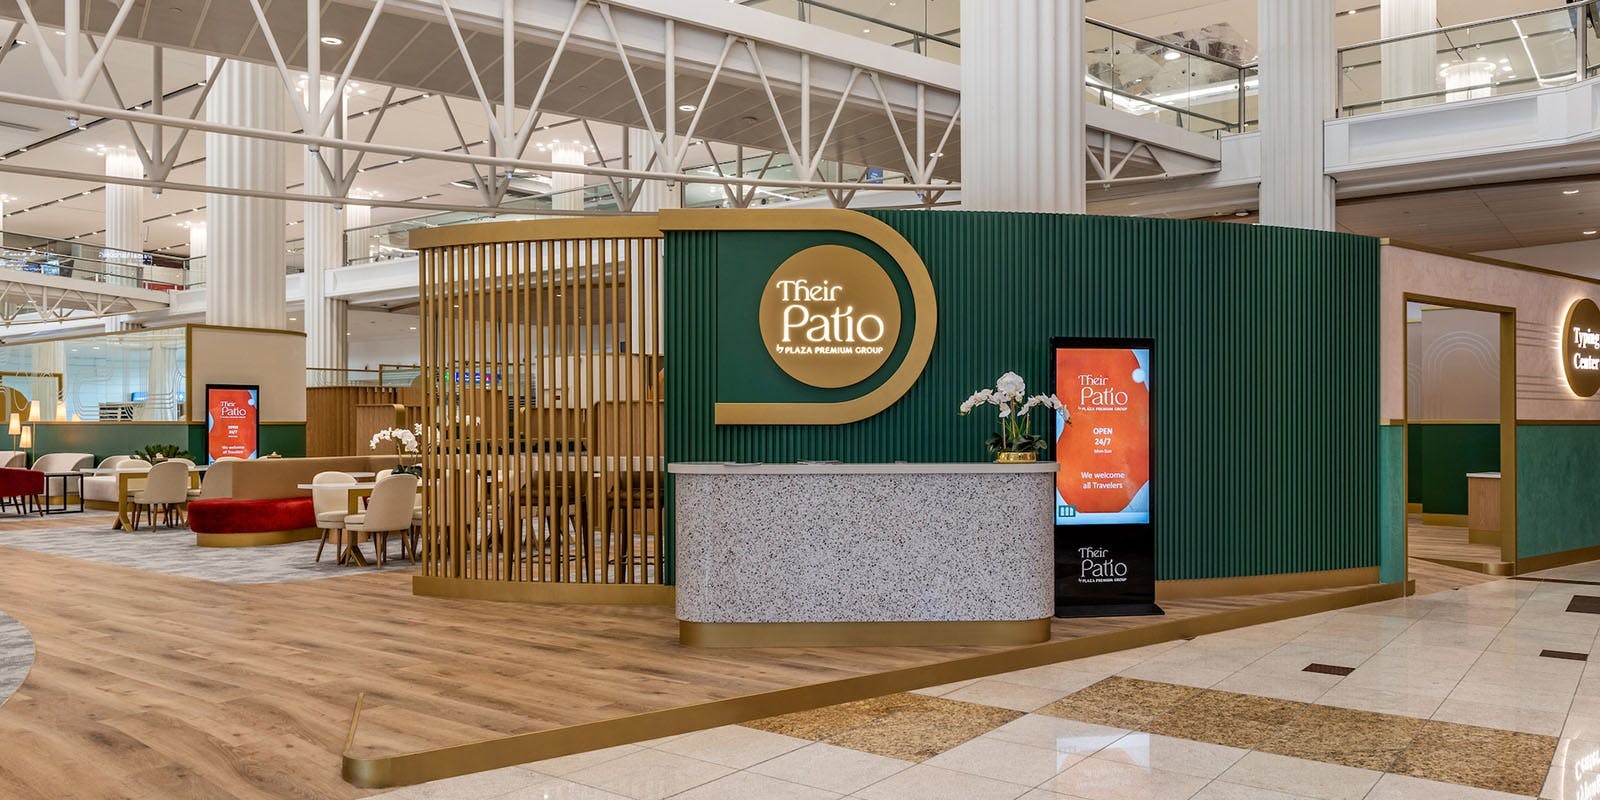 Aeroporto Internacional de Dubai (chegadas) Ingressos para o Patio by Plaza Premium Group